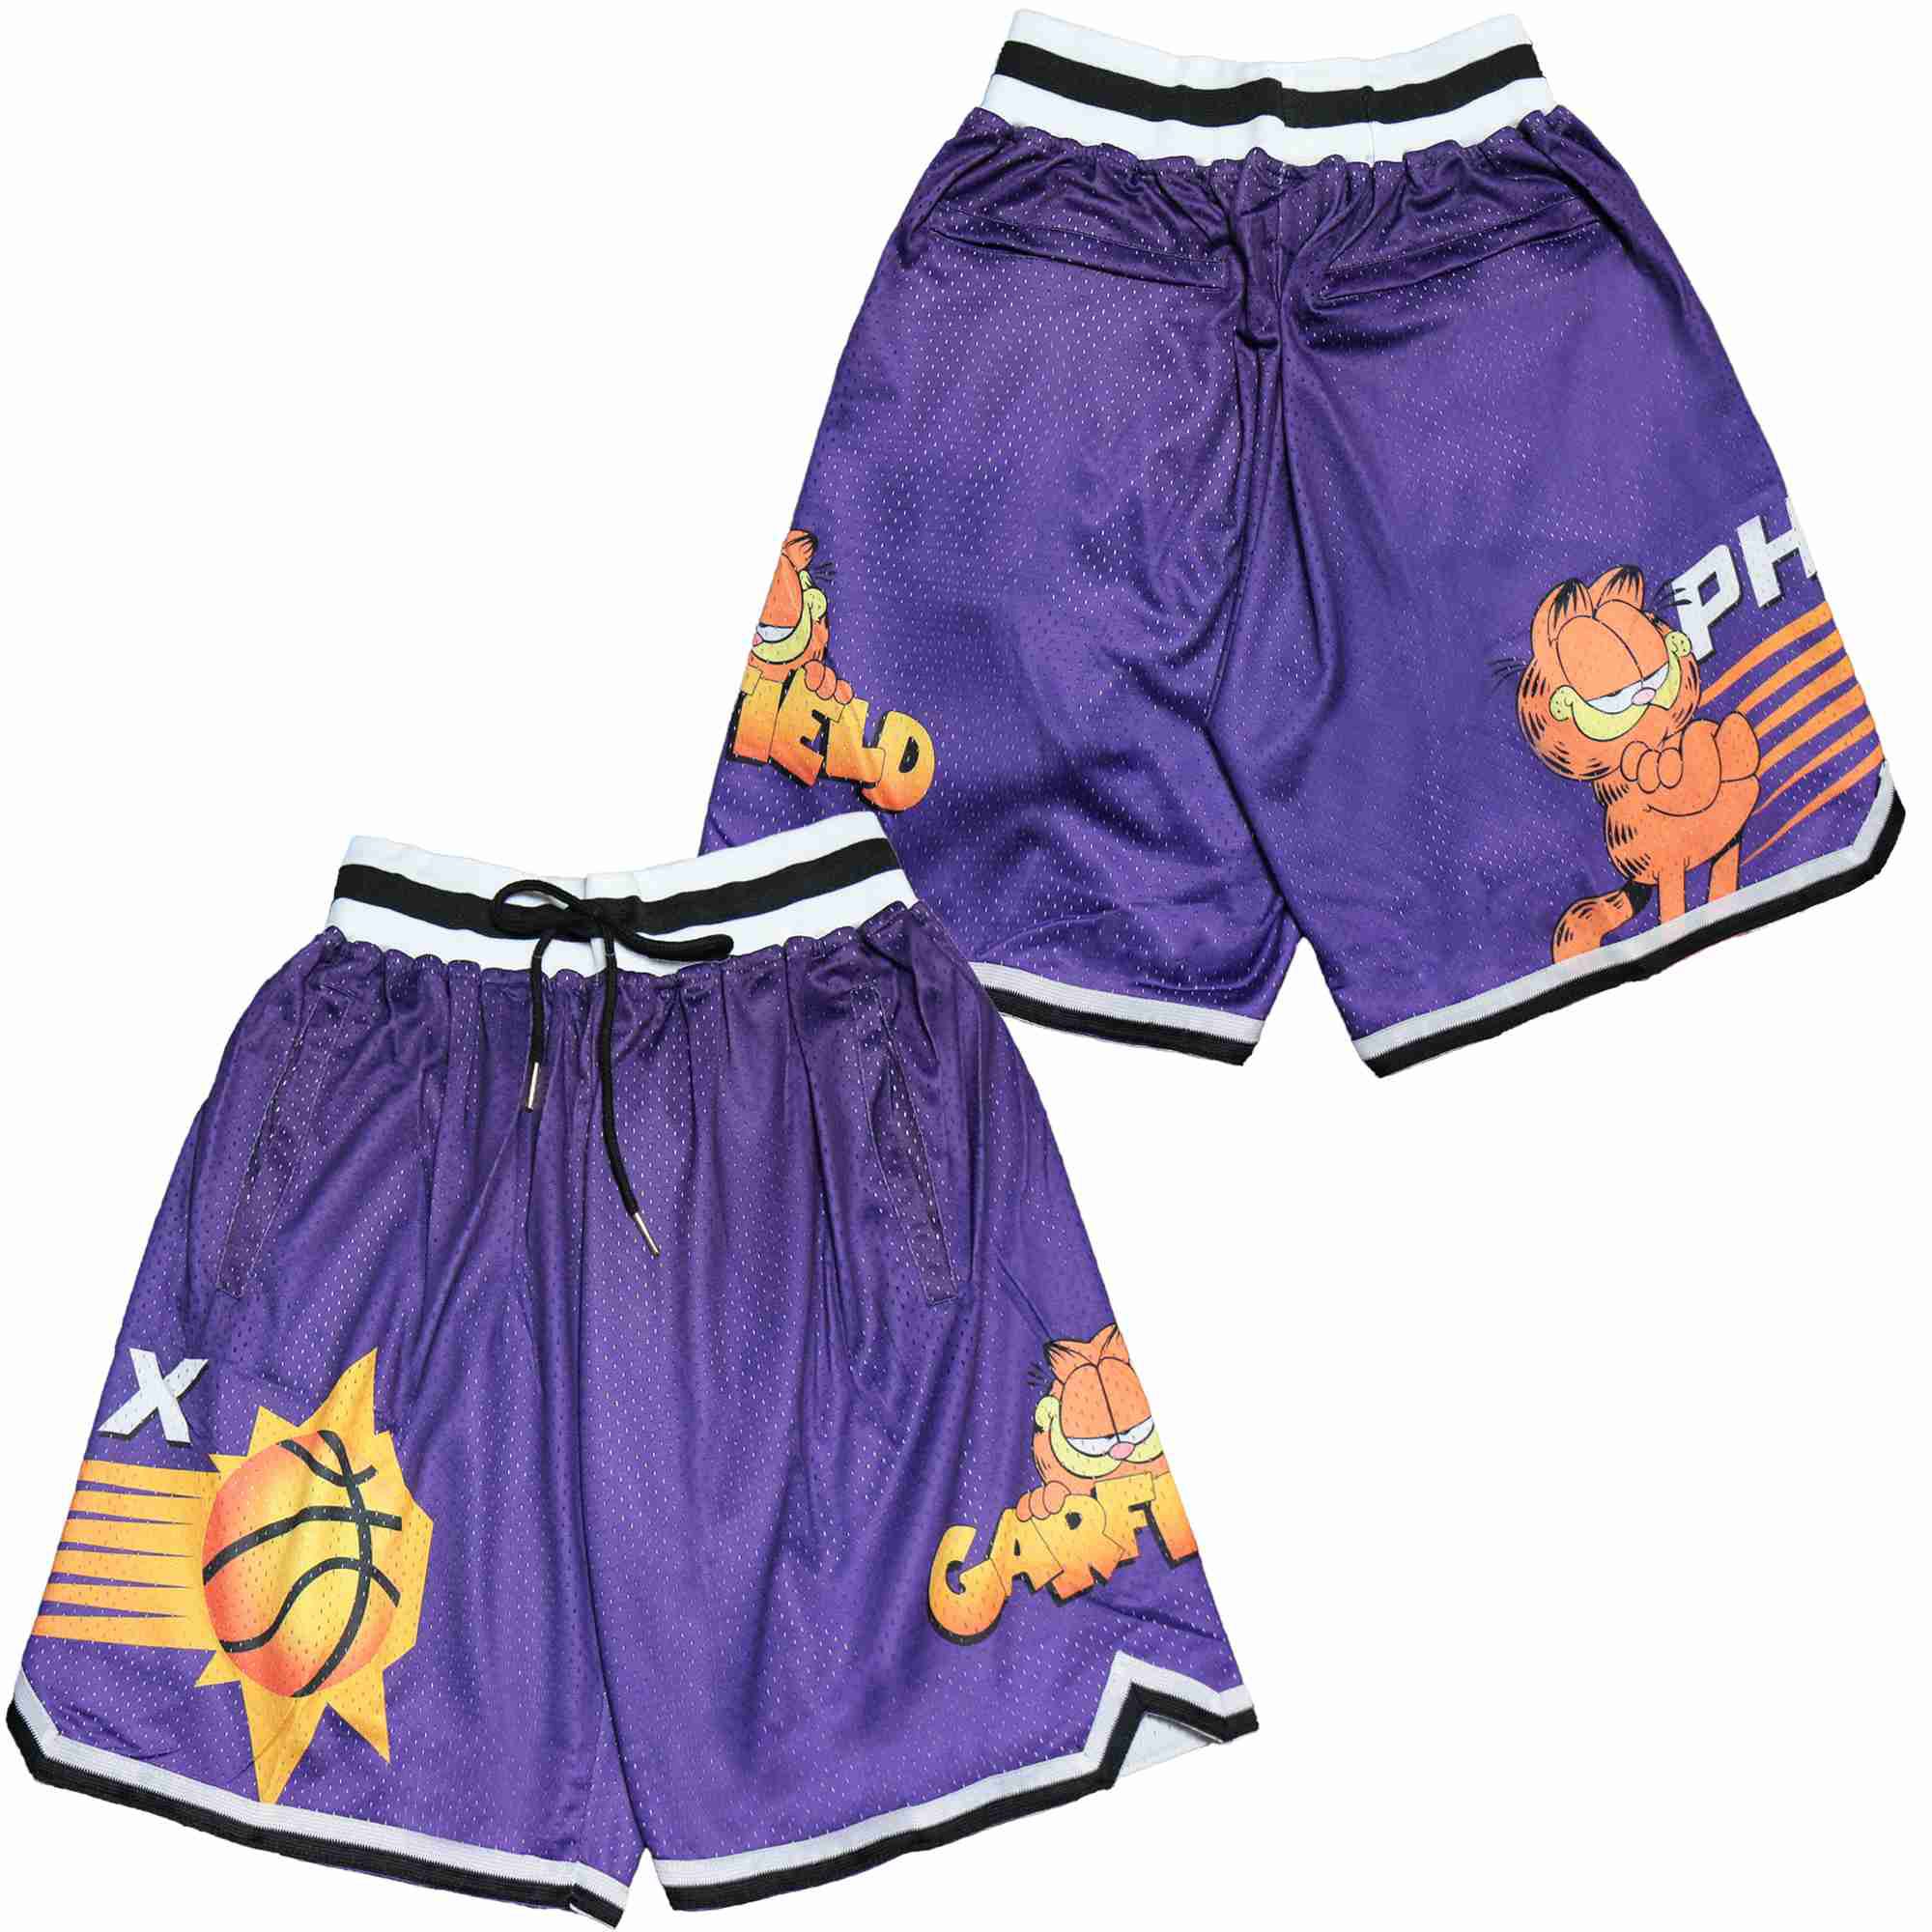 Men NBA Phoenix Suns Shorts 20216181->memphis grizzlies->NBA Jersey